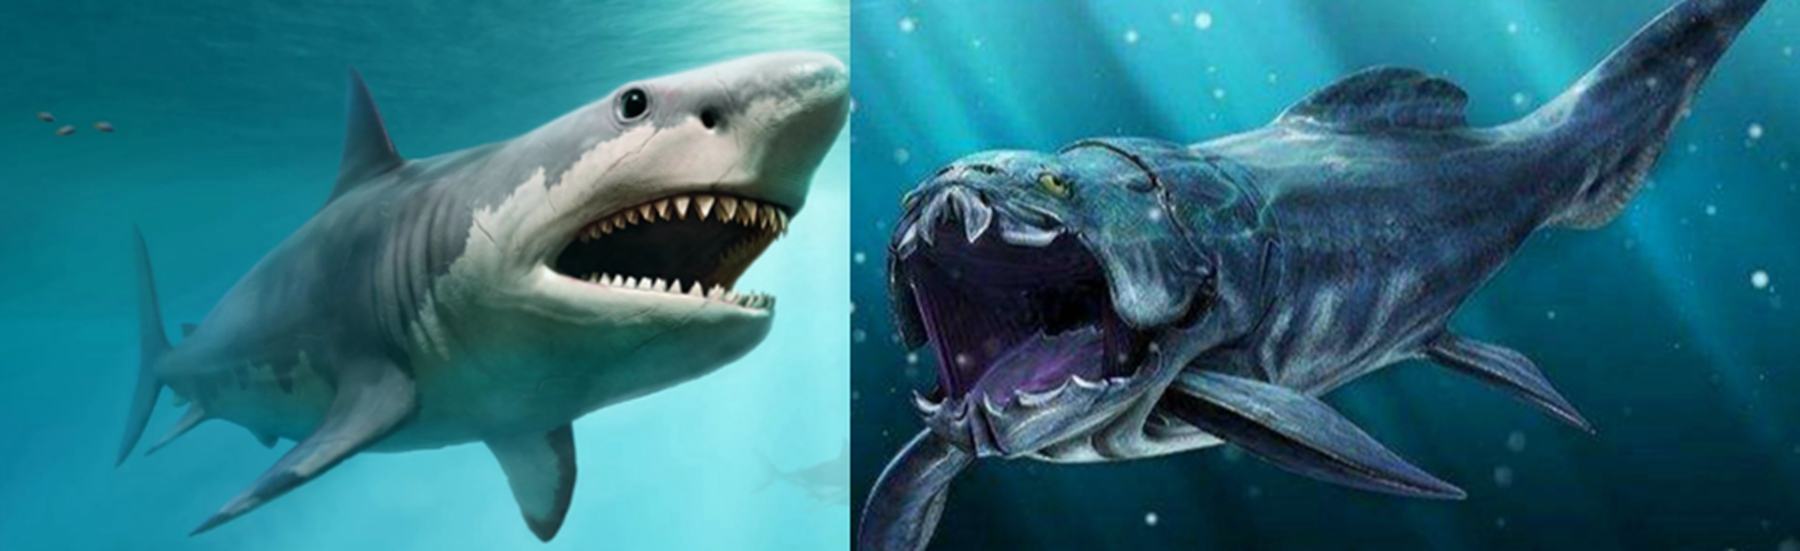 巨齿鲨vs邓氏鱼谁厉害?邓氏鱼灭绝了吗?